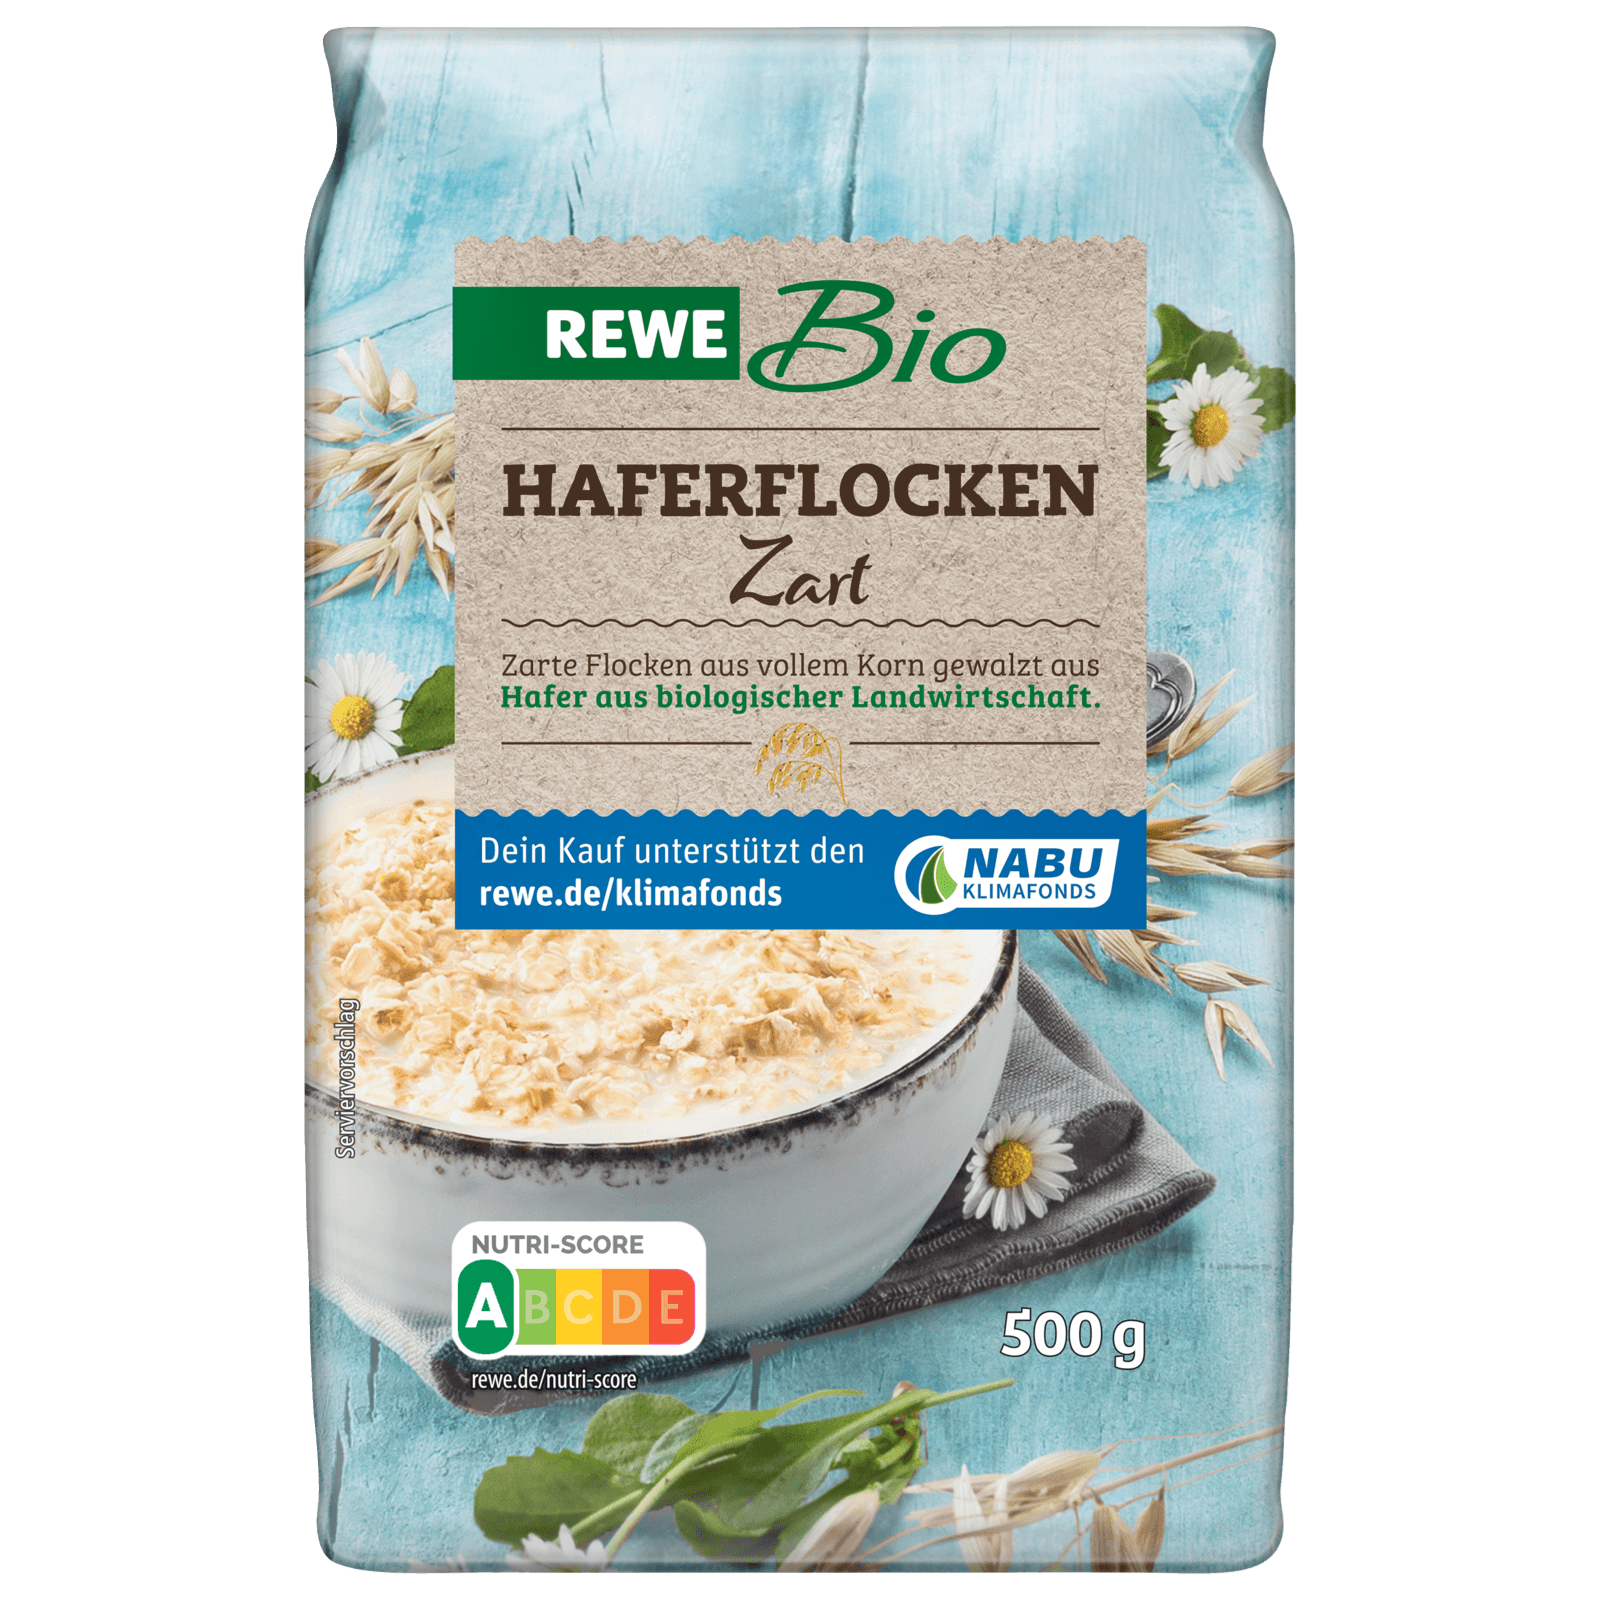 Davert Bio Cornflakes 250g bei REWE online bestellen!